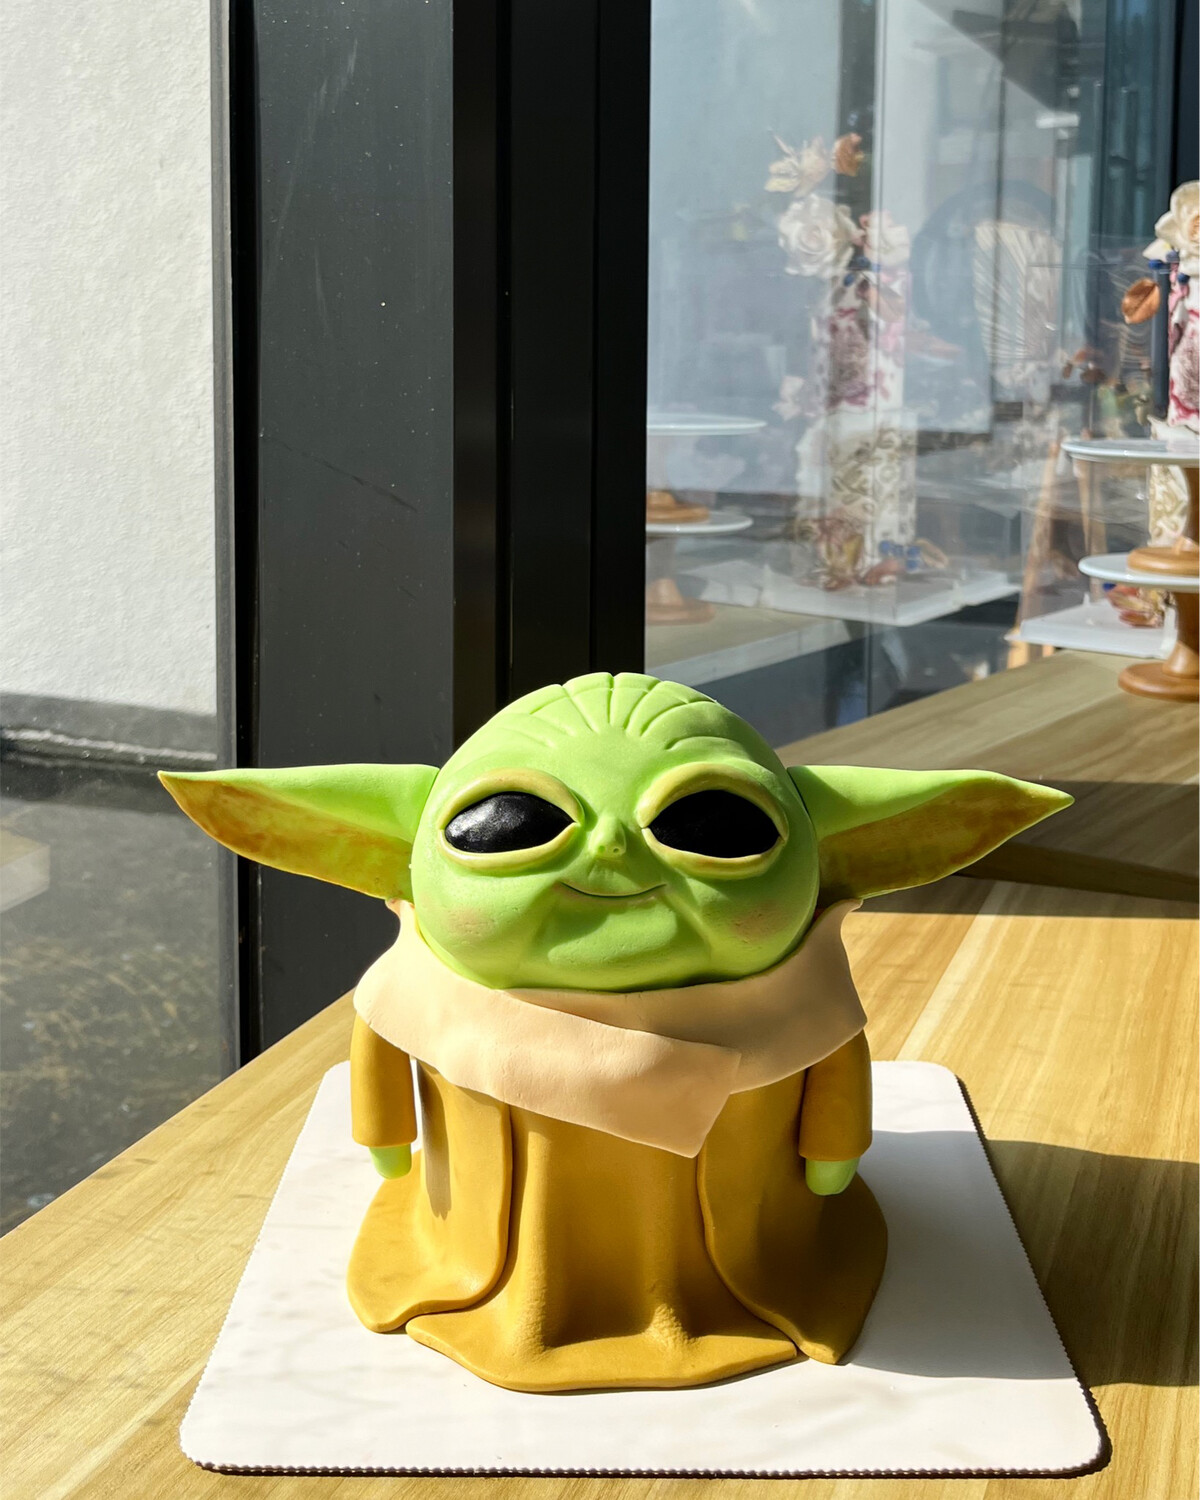 Star Wars Baby Yoda 3D Cake 2